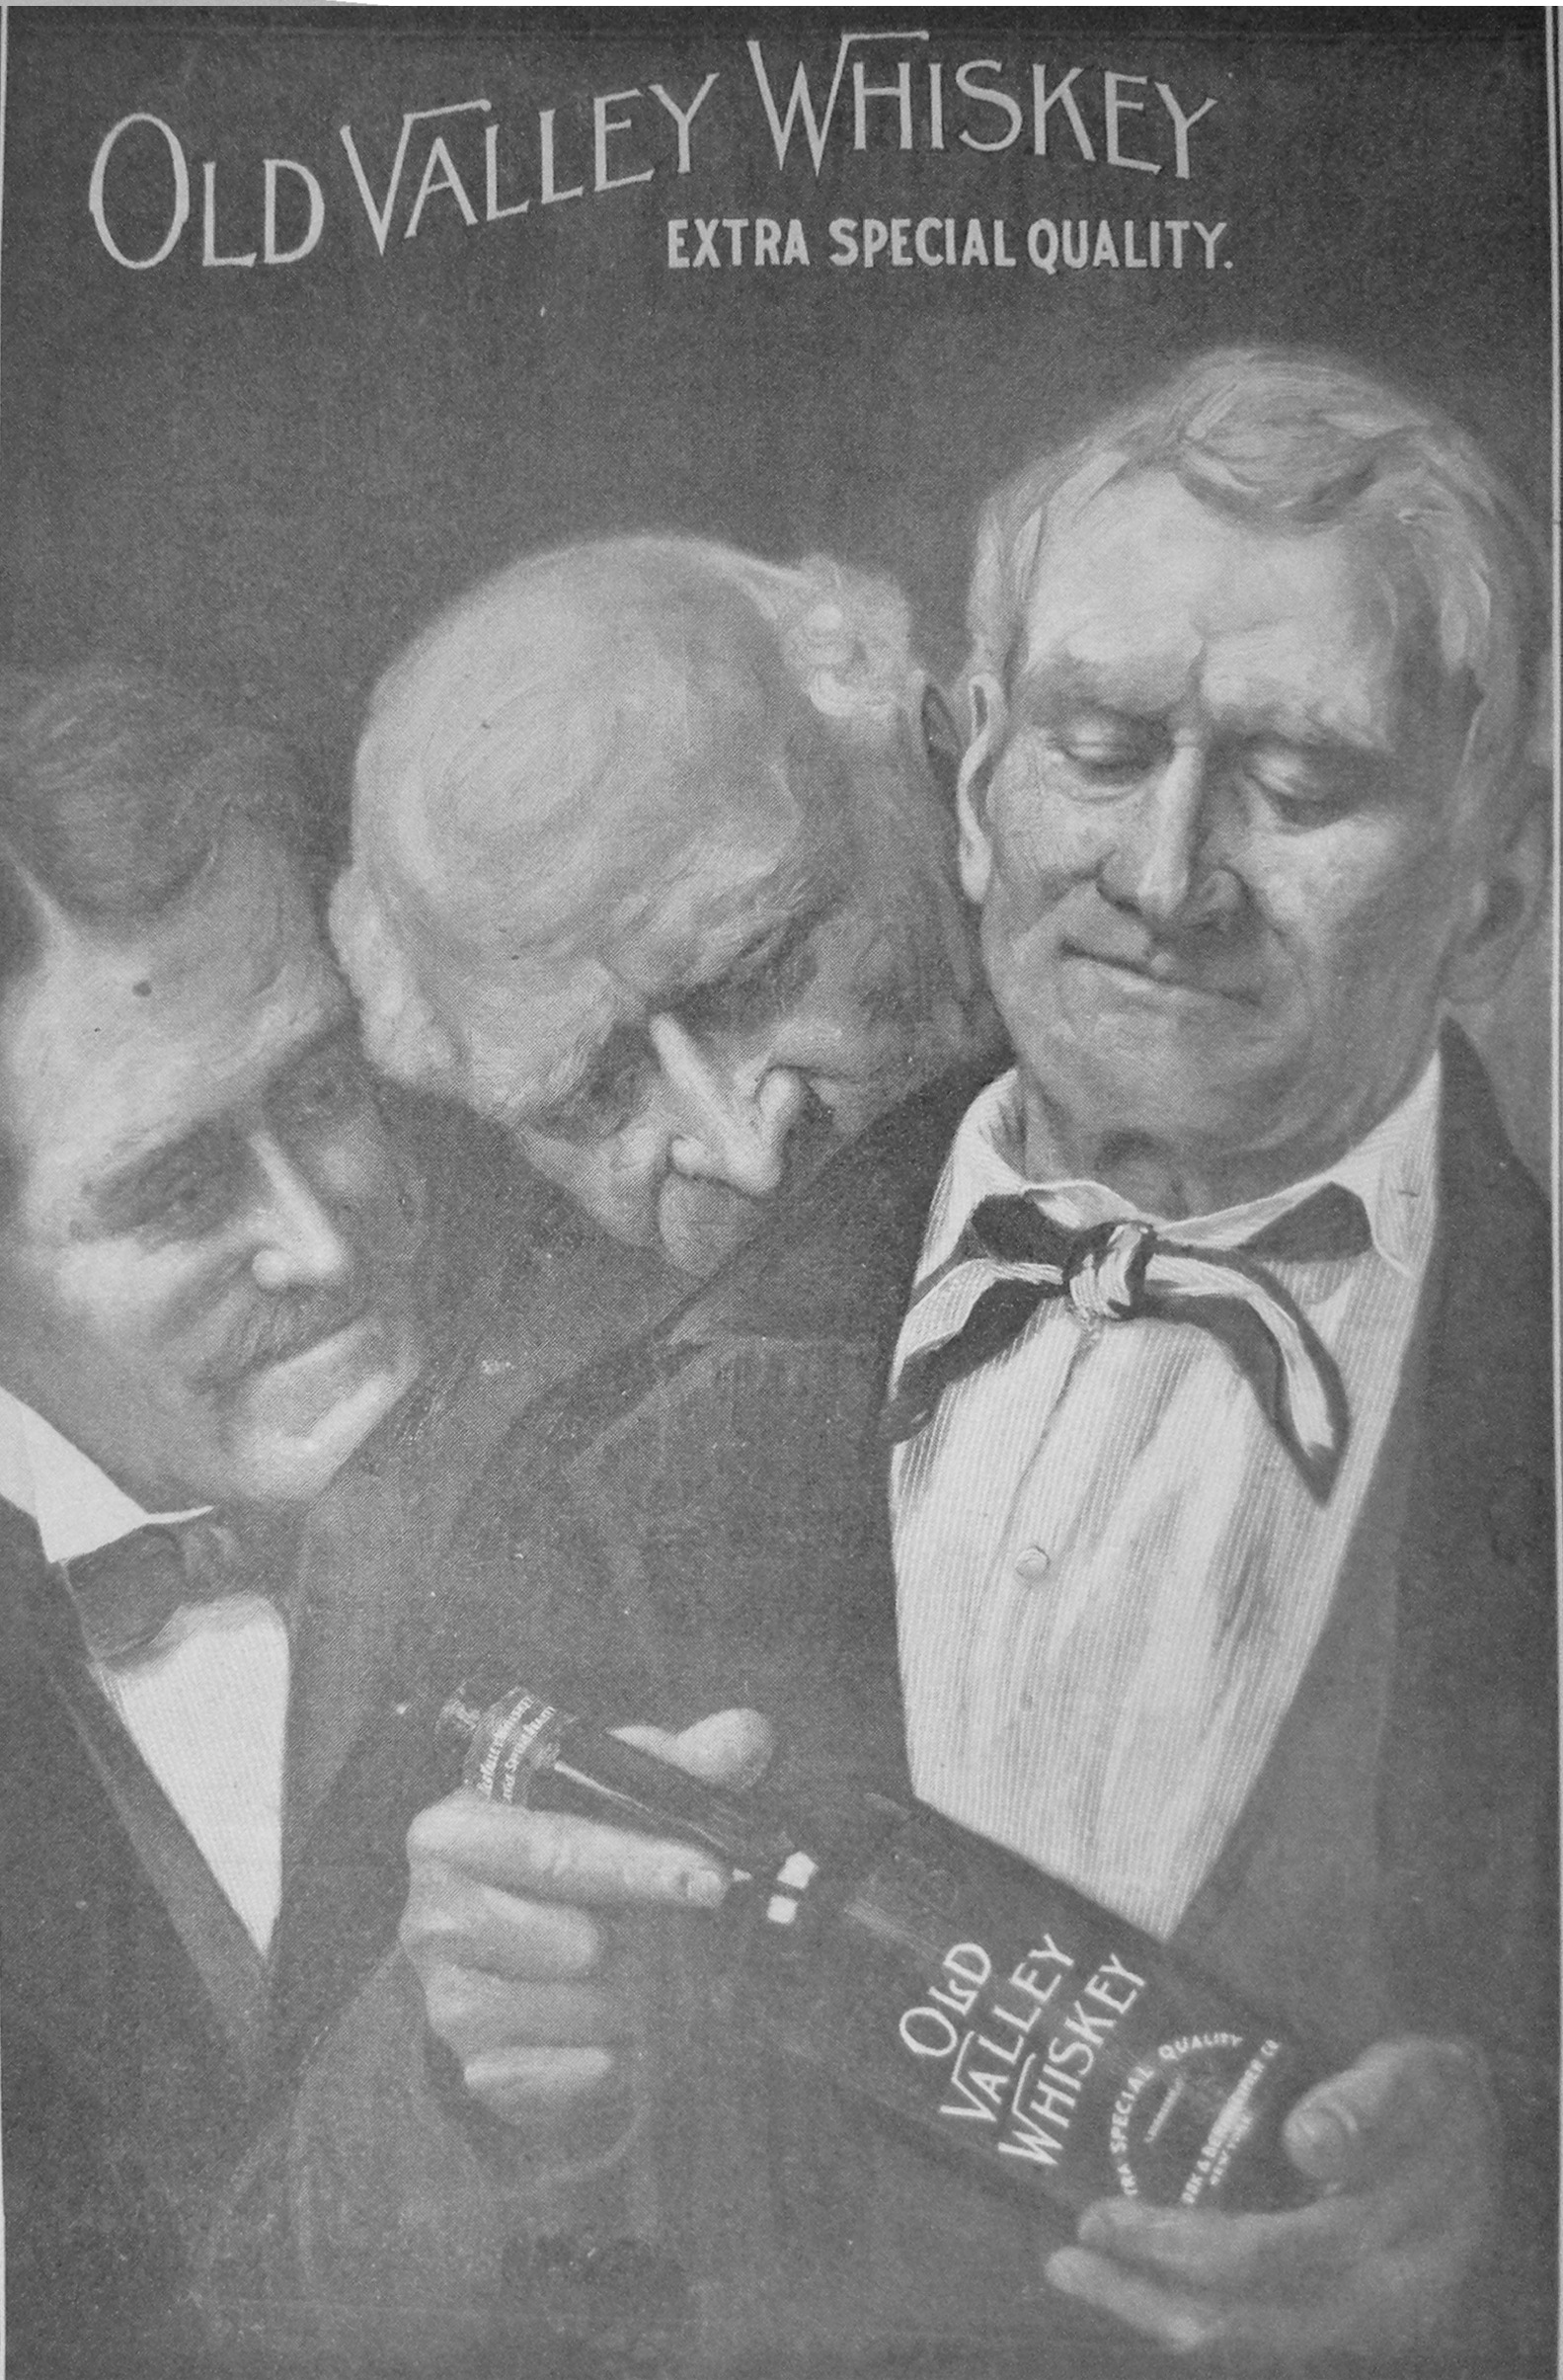 Whisky im Bild: Whiskywerbung anno 1905